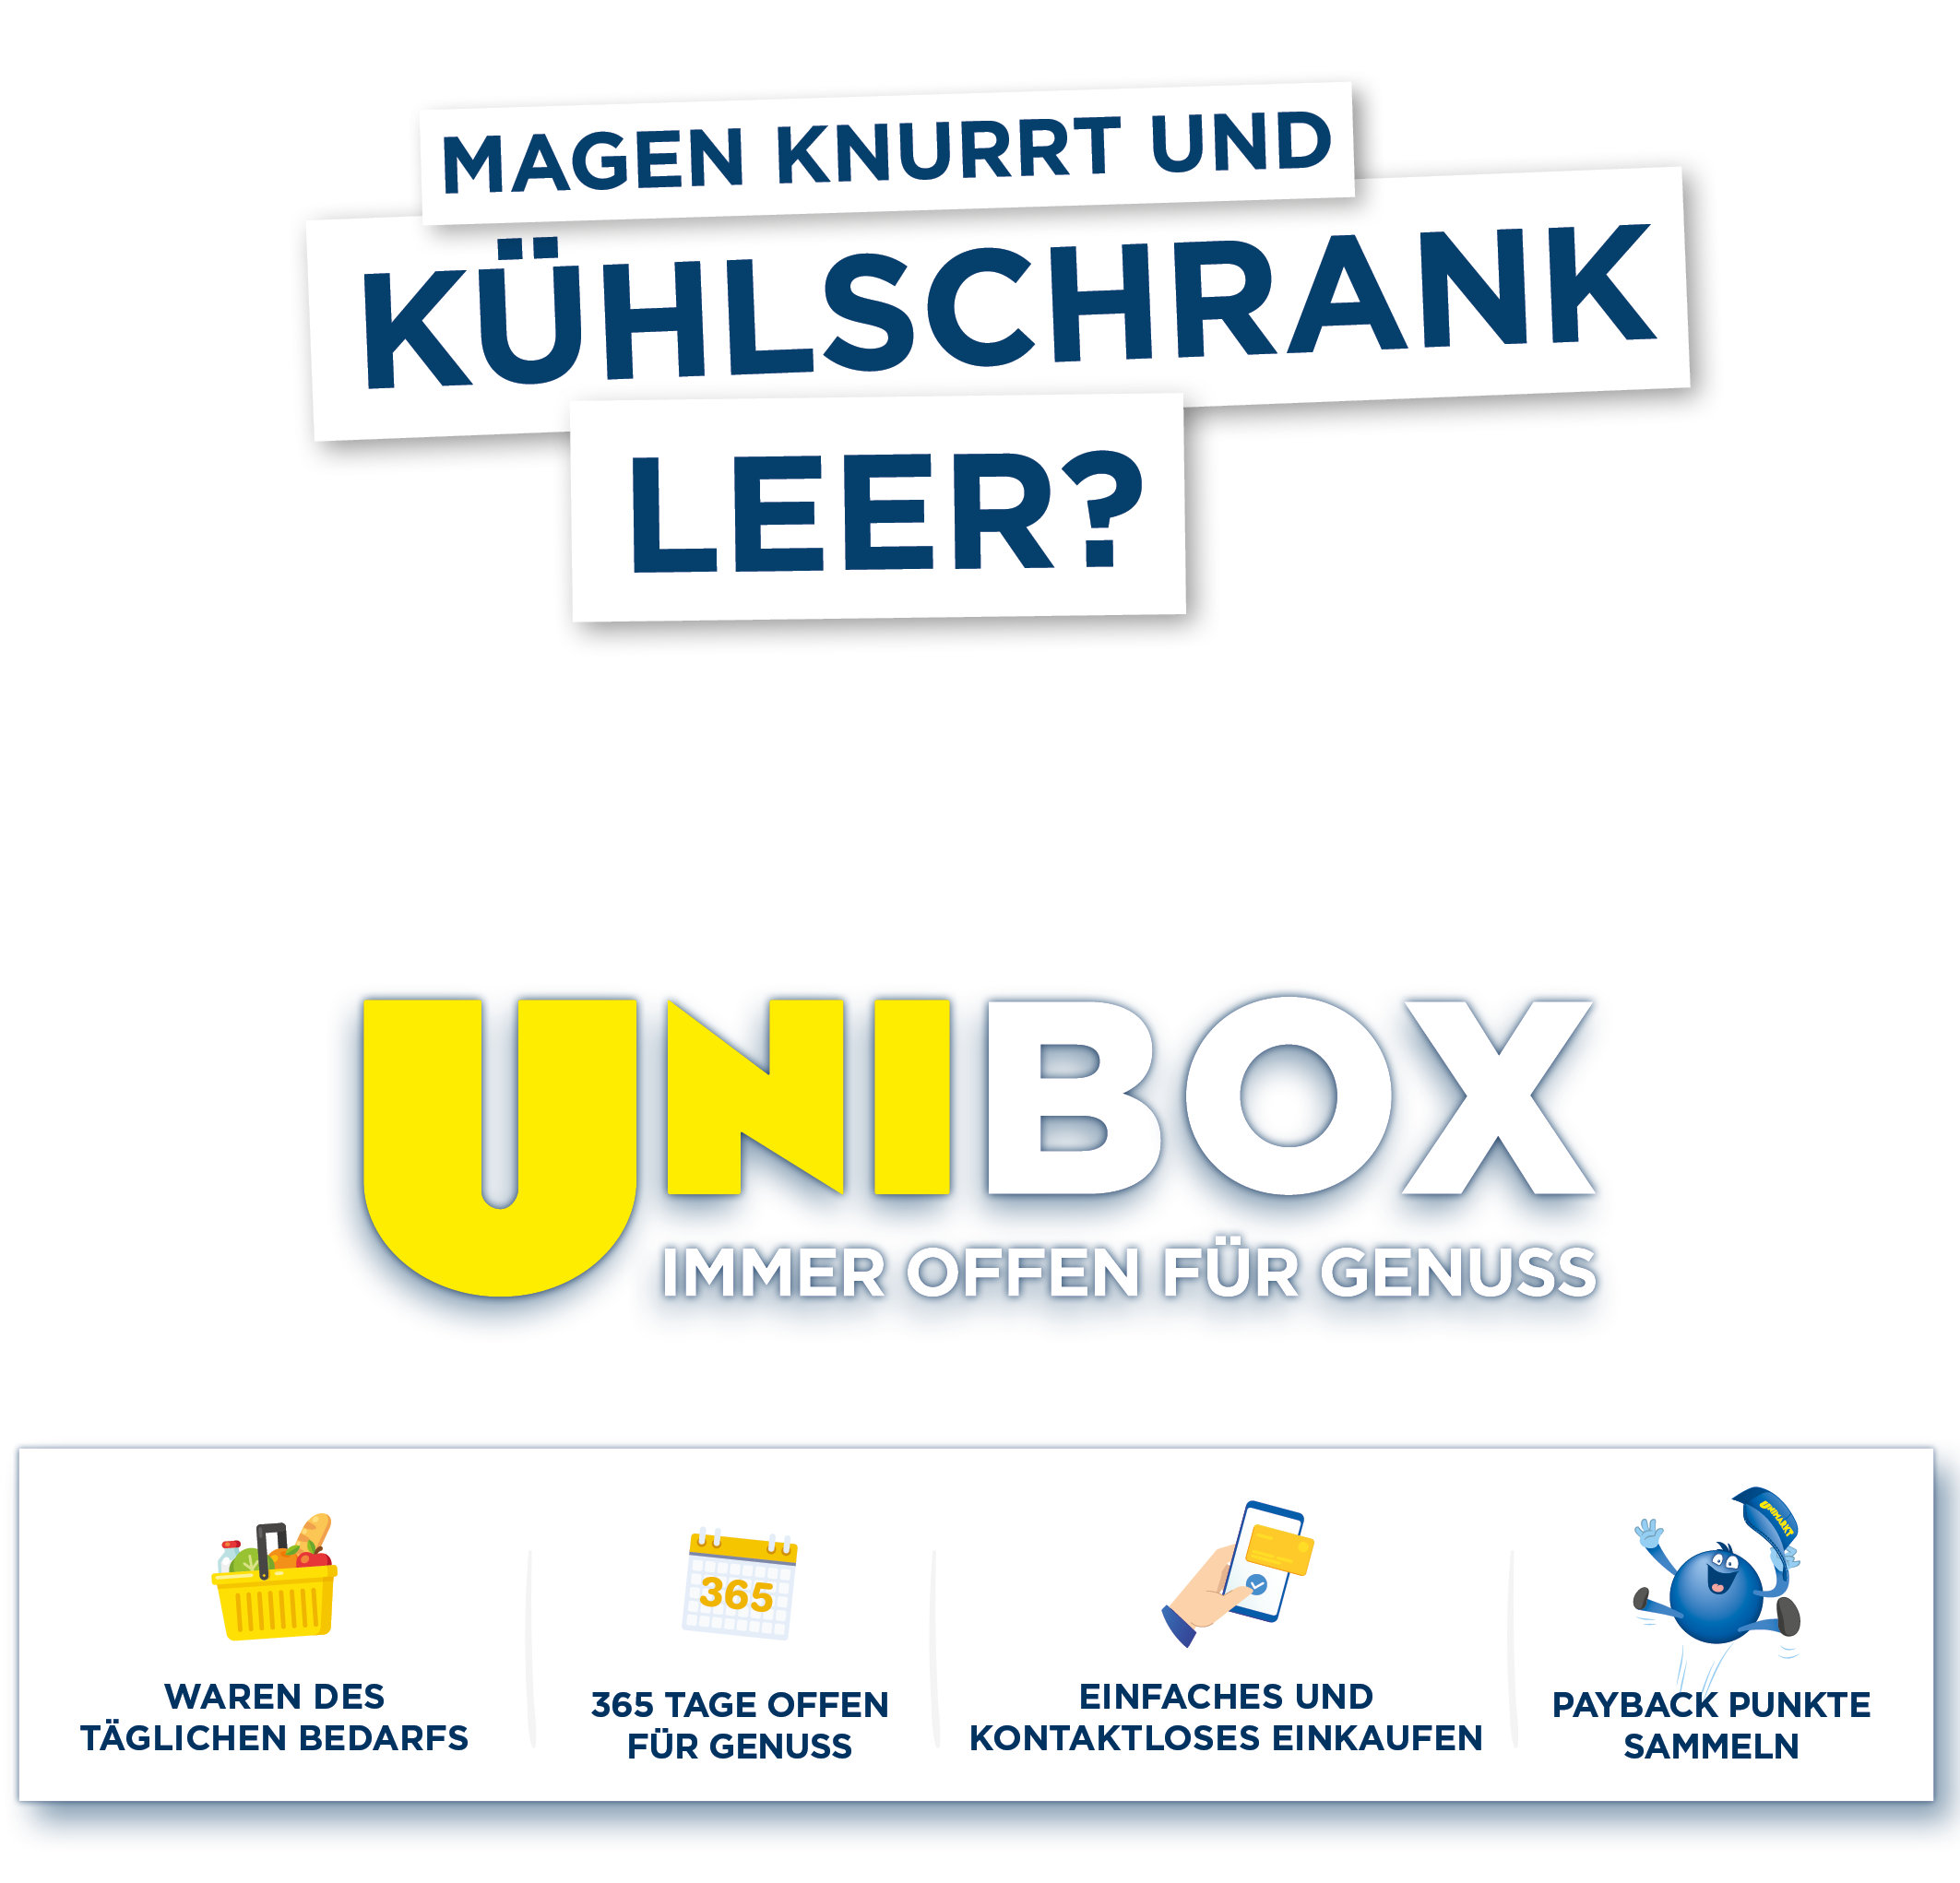 Unibox_Hintergrund_2